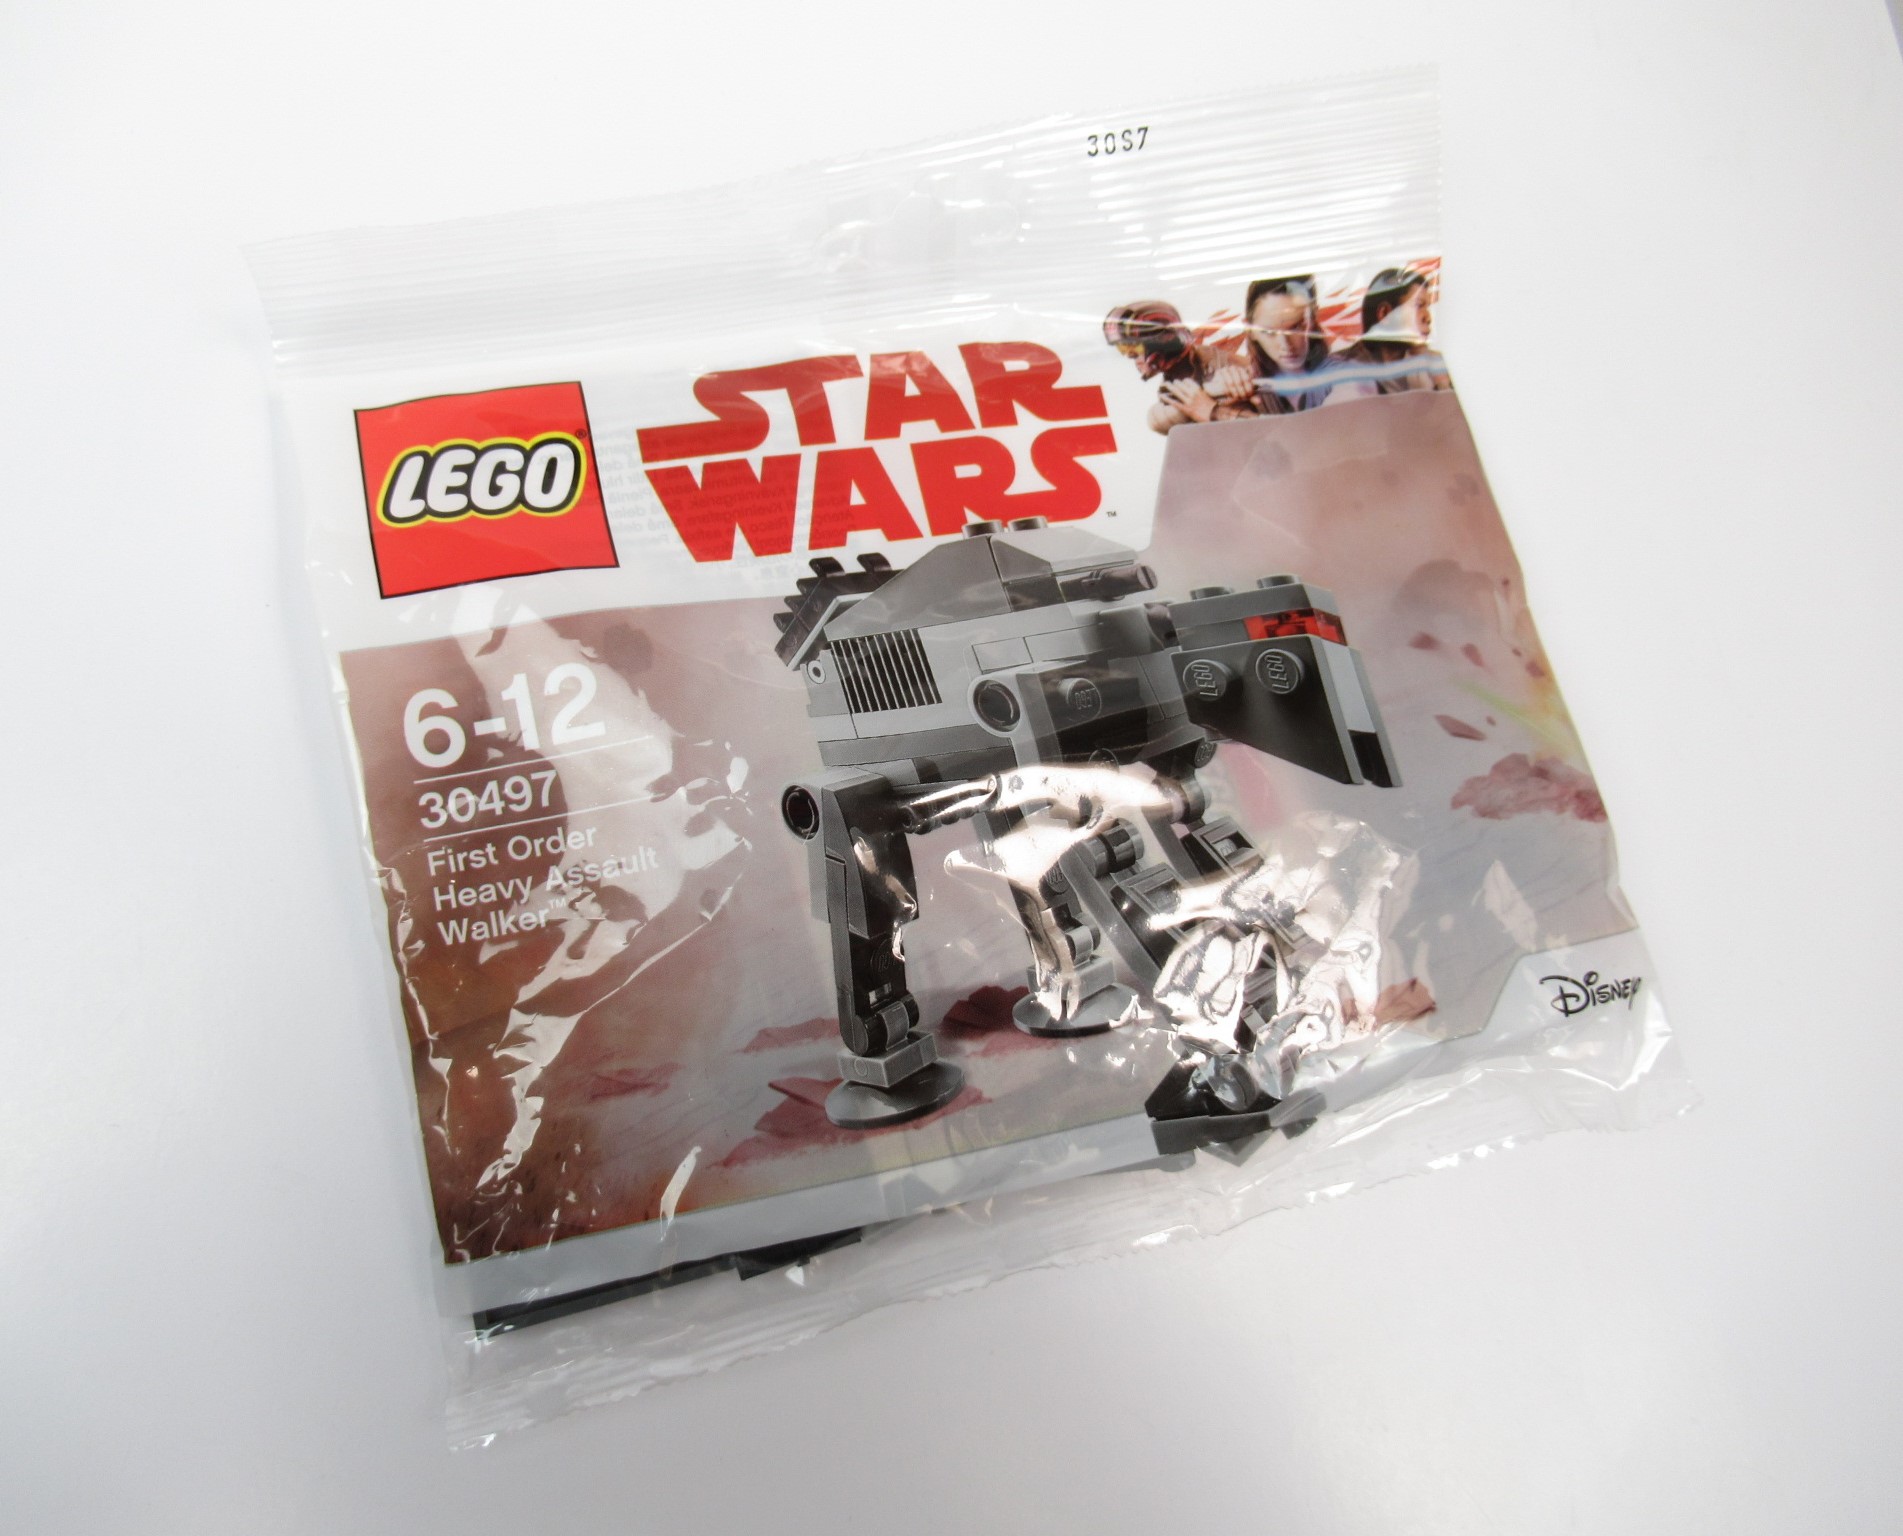 Imagen de LEGO Star Wars 30497 First Order Heavy Assault Walker Polybag